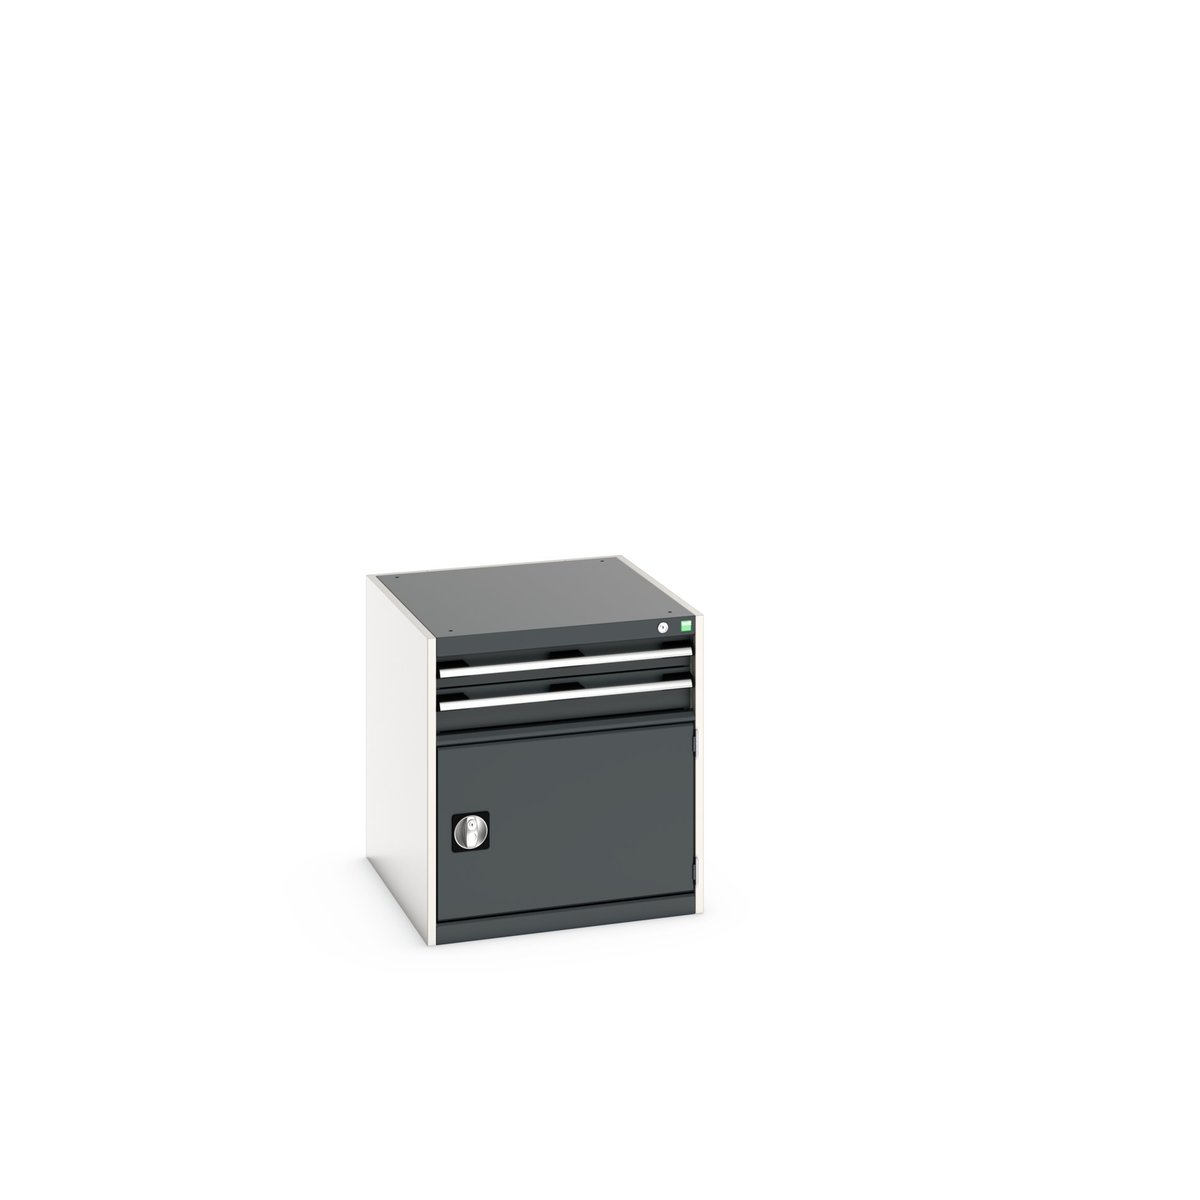 40027001. - cubio drawer-door cabinet